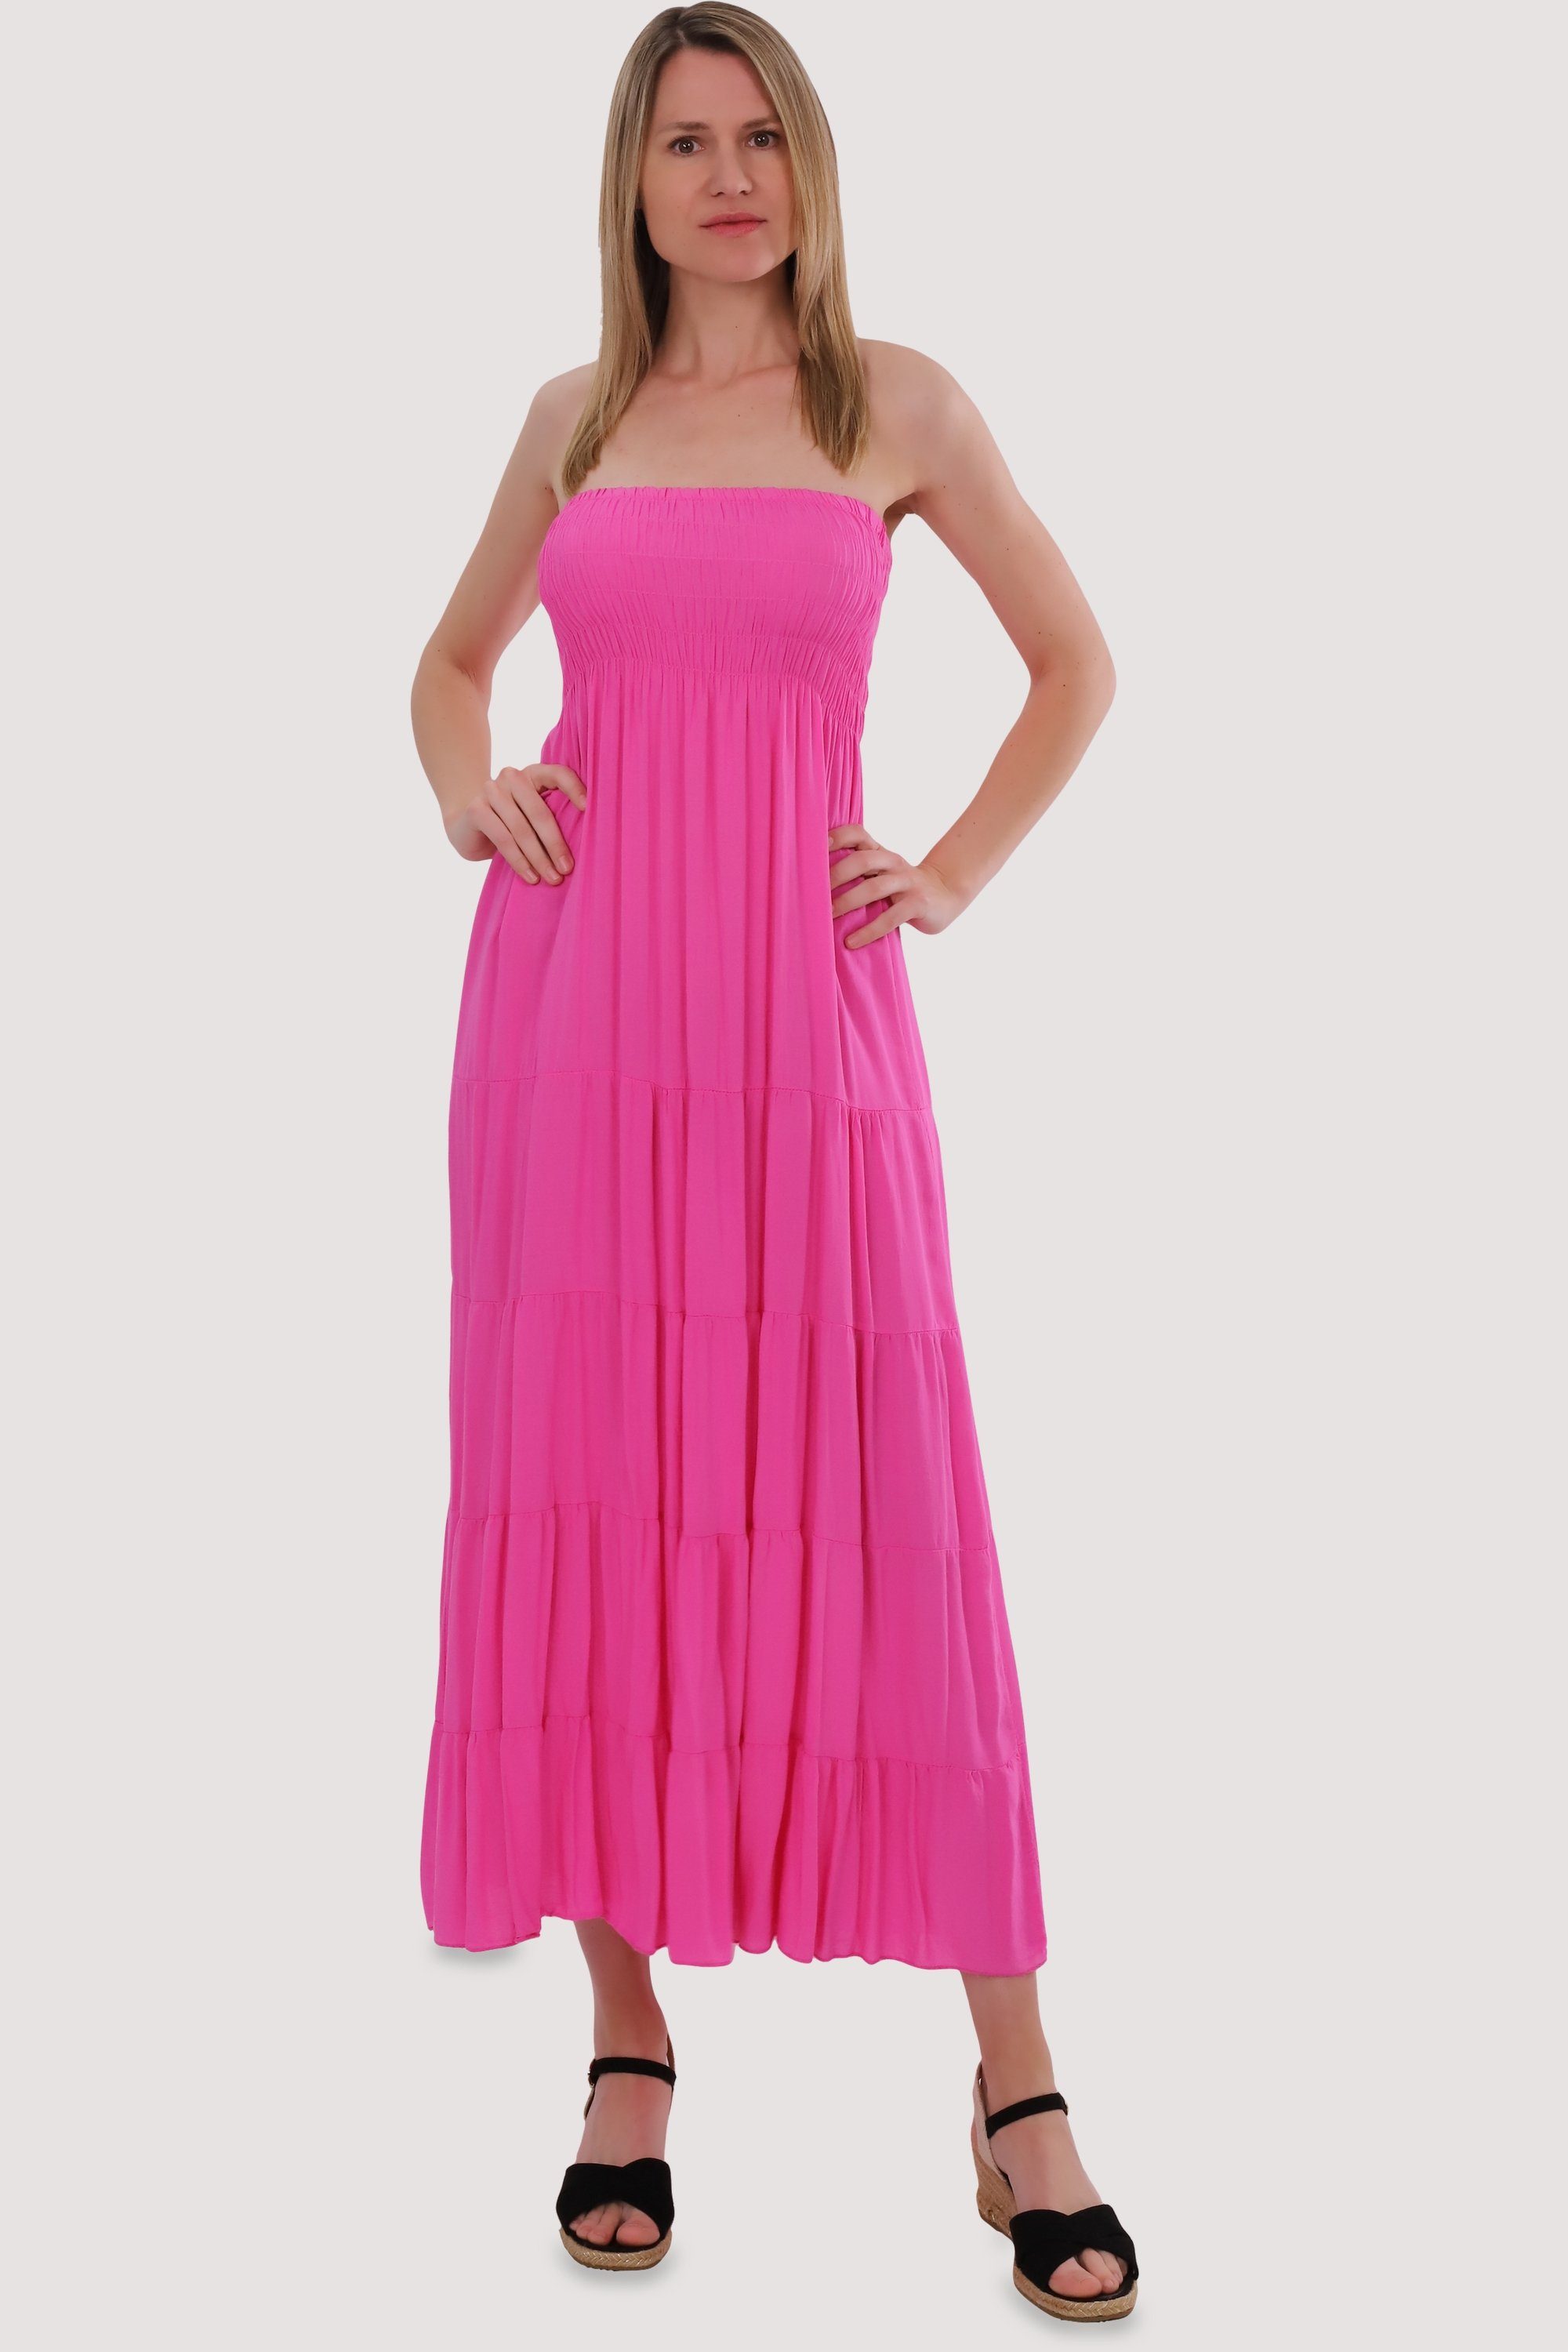 malito more than fashion Bandeaukleid 4635 figurumspielendes Sommerkleid Strandkleid Einheitsgröße rosa